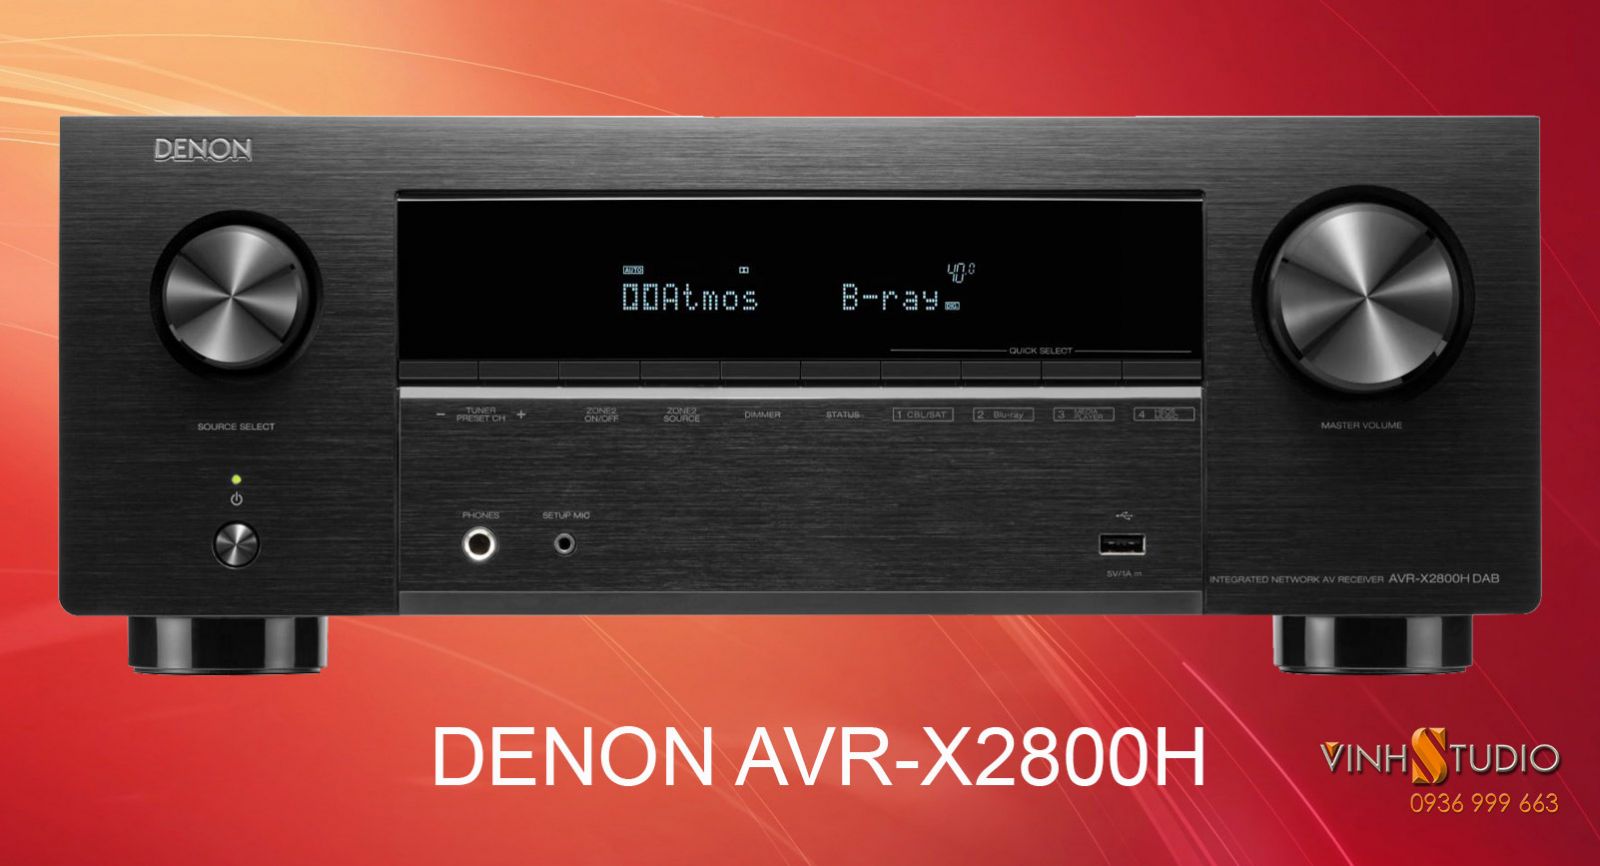 Ampli Denon AVR-X2800H giá rẻ nhất Việt Nam sẵn hàng tại Vinhstudio